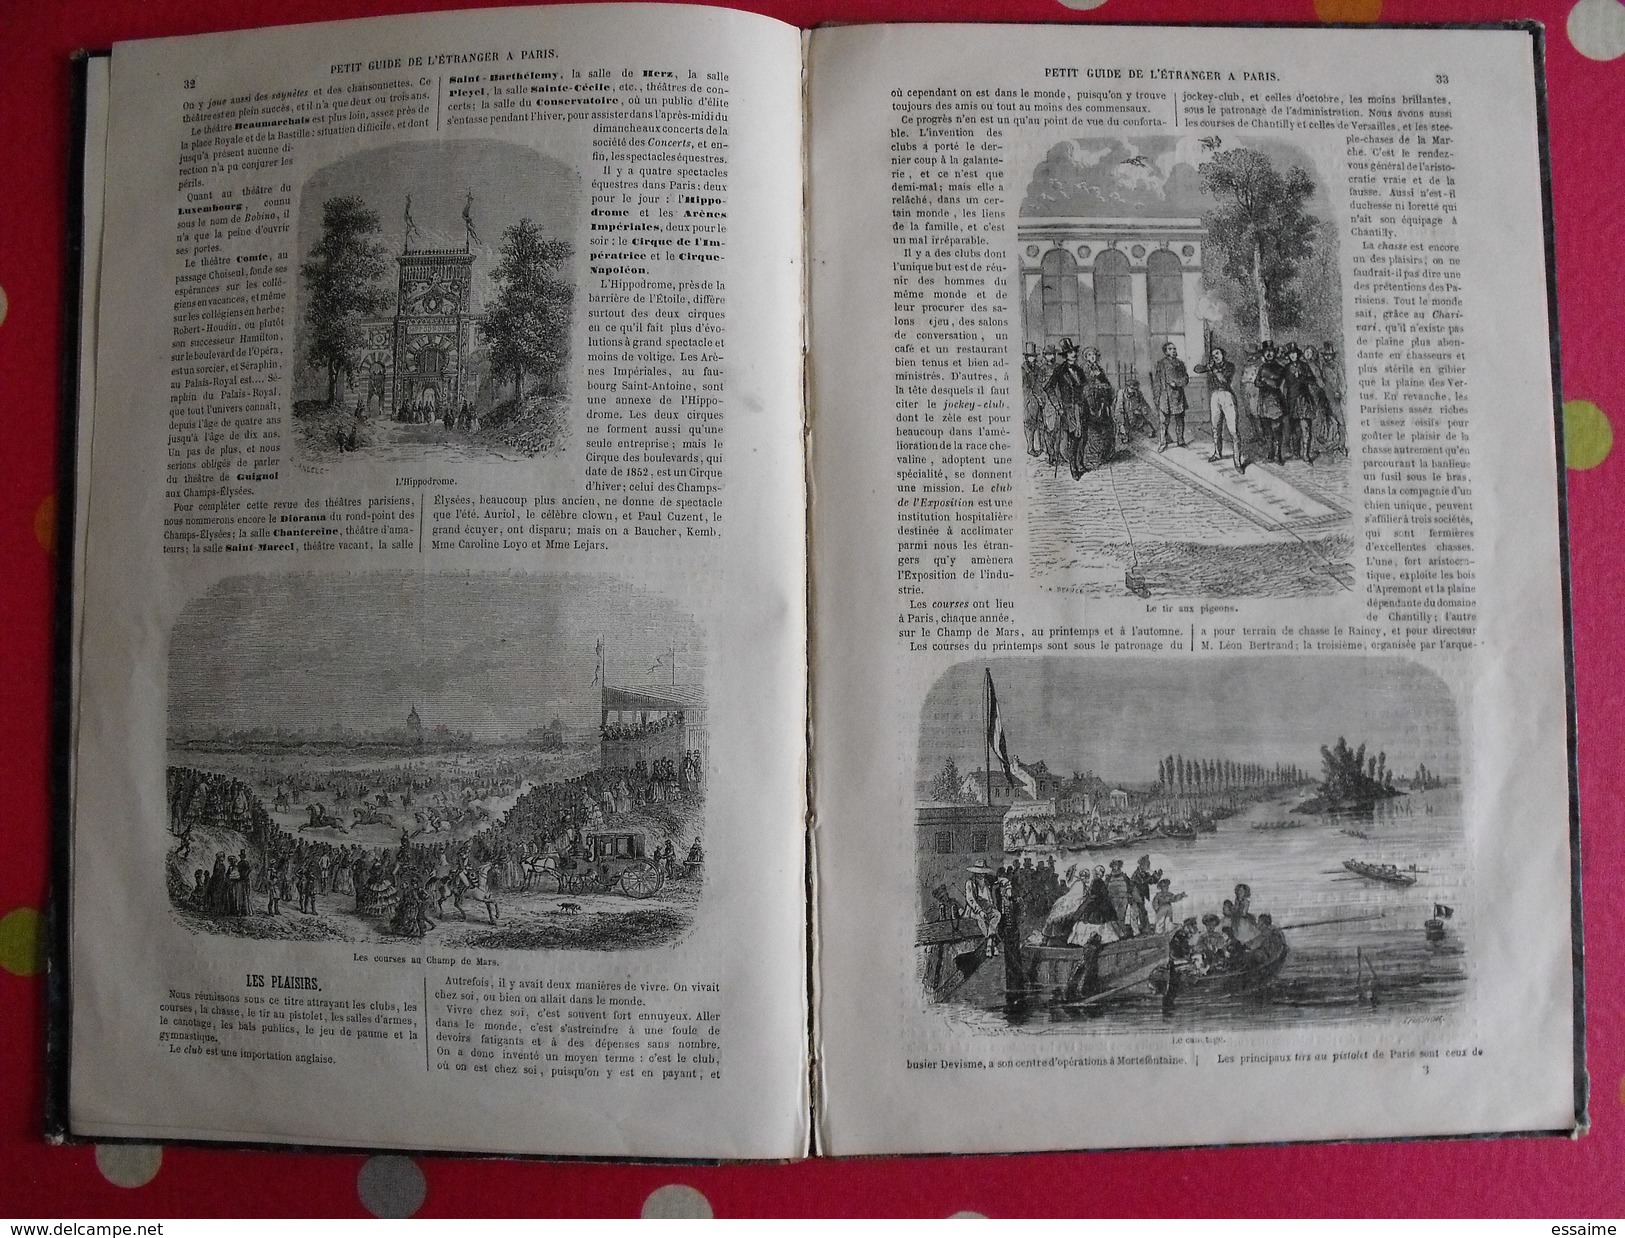 petit guide de l'étranger à Paris. Frédéric Bernard. 1855. 40 vignettes Lancelot Bhérond. Hachette + plan